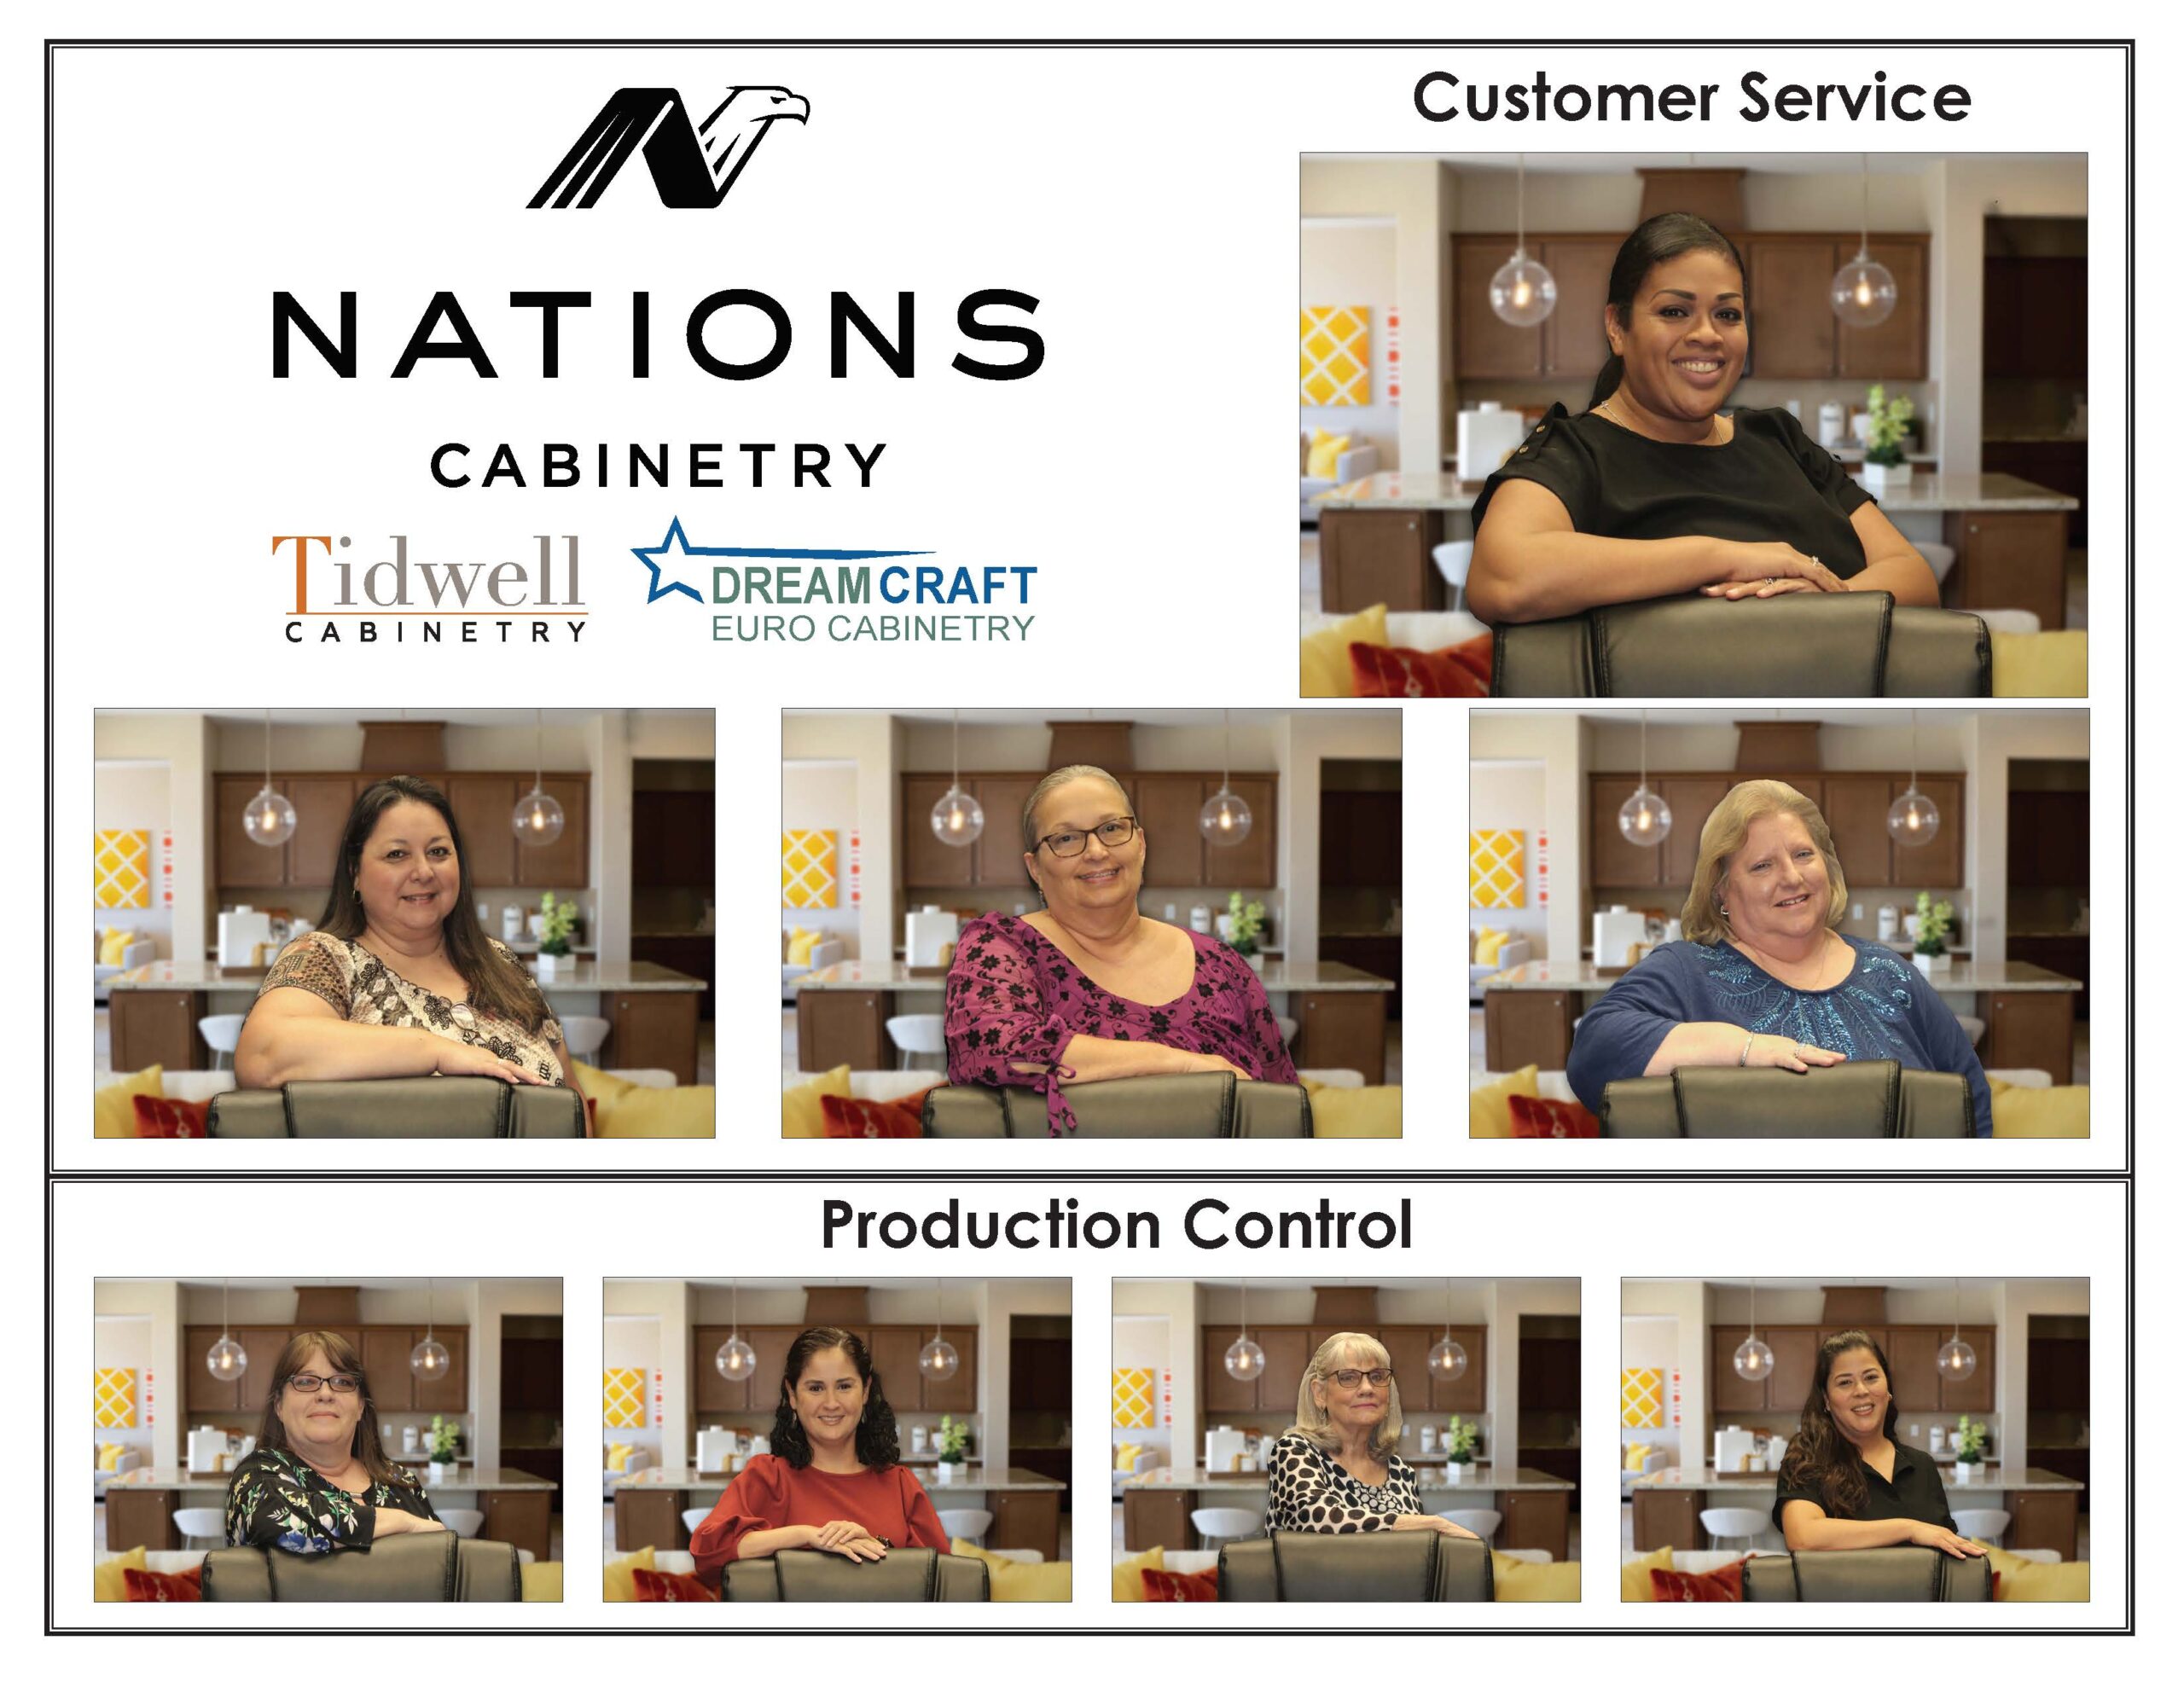 Meet our customer service team